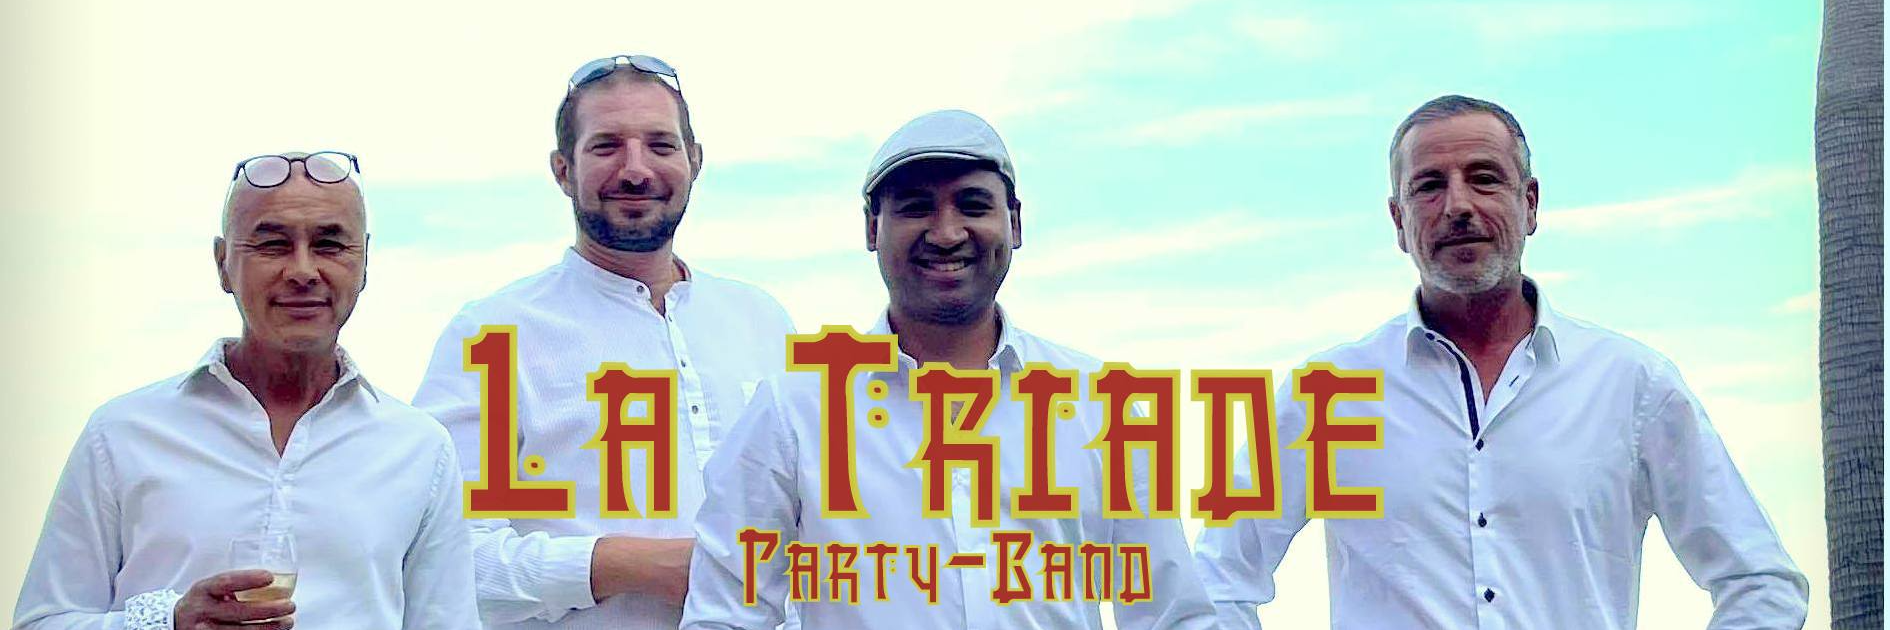 La Triade Party-Band, groupe de musique Soul en représentation à Alpes Maritimes - photo de couverture